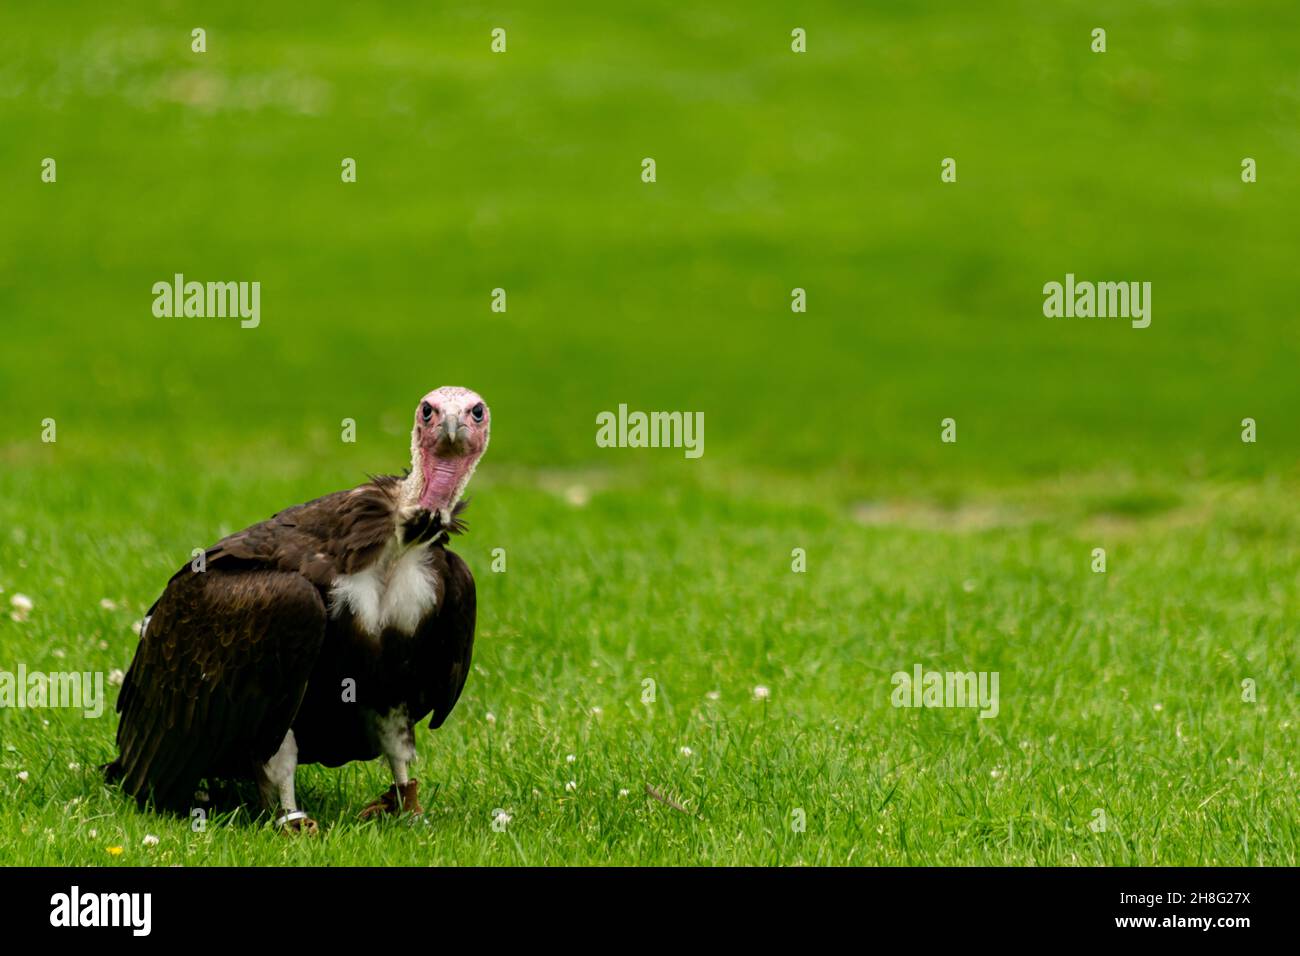 Geier mit Kapuze, der auf einem Gras sitzt und direkt zur Kamera schaut, Gesichtsansicht eines Greifvogels, der auf dem Boden läuft, gefangen gehalten und trainiert Stockfoto